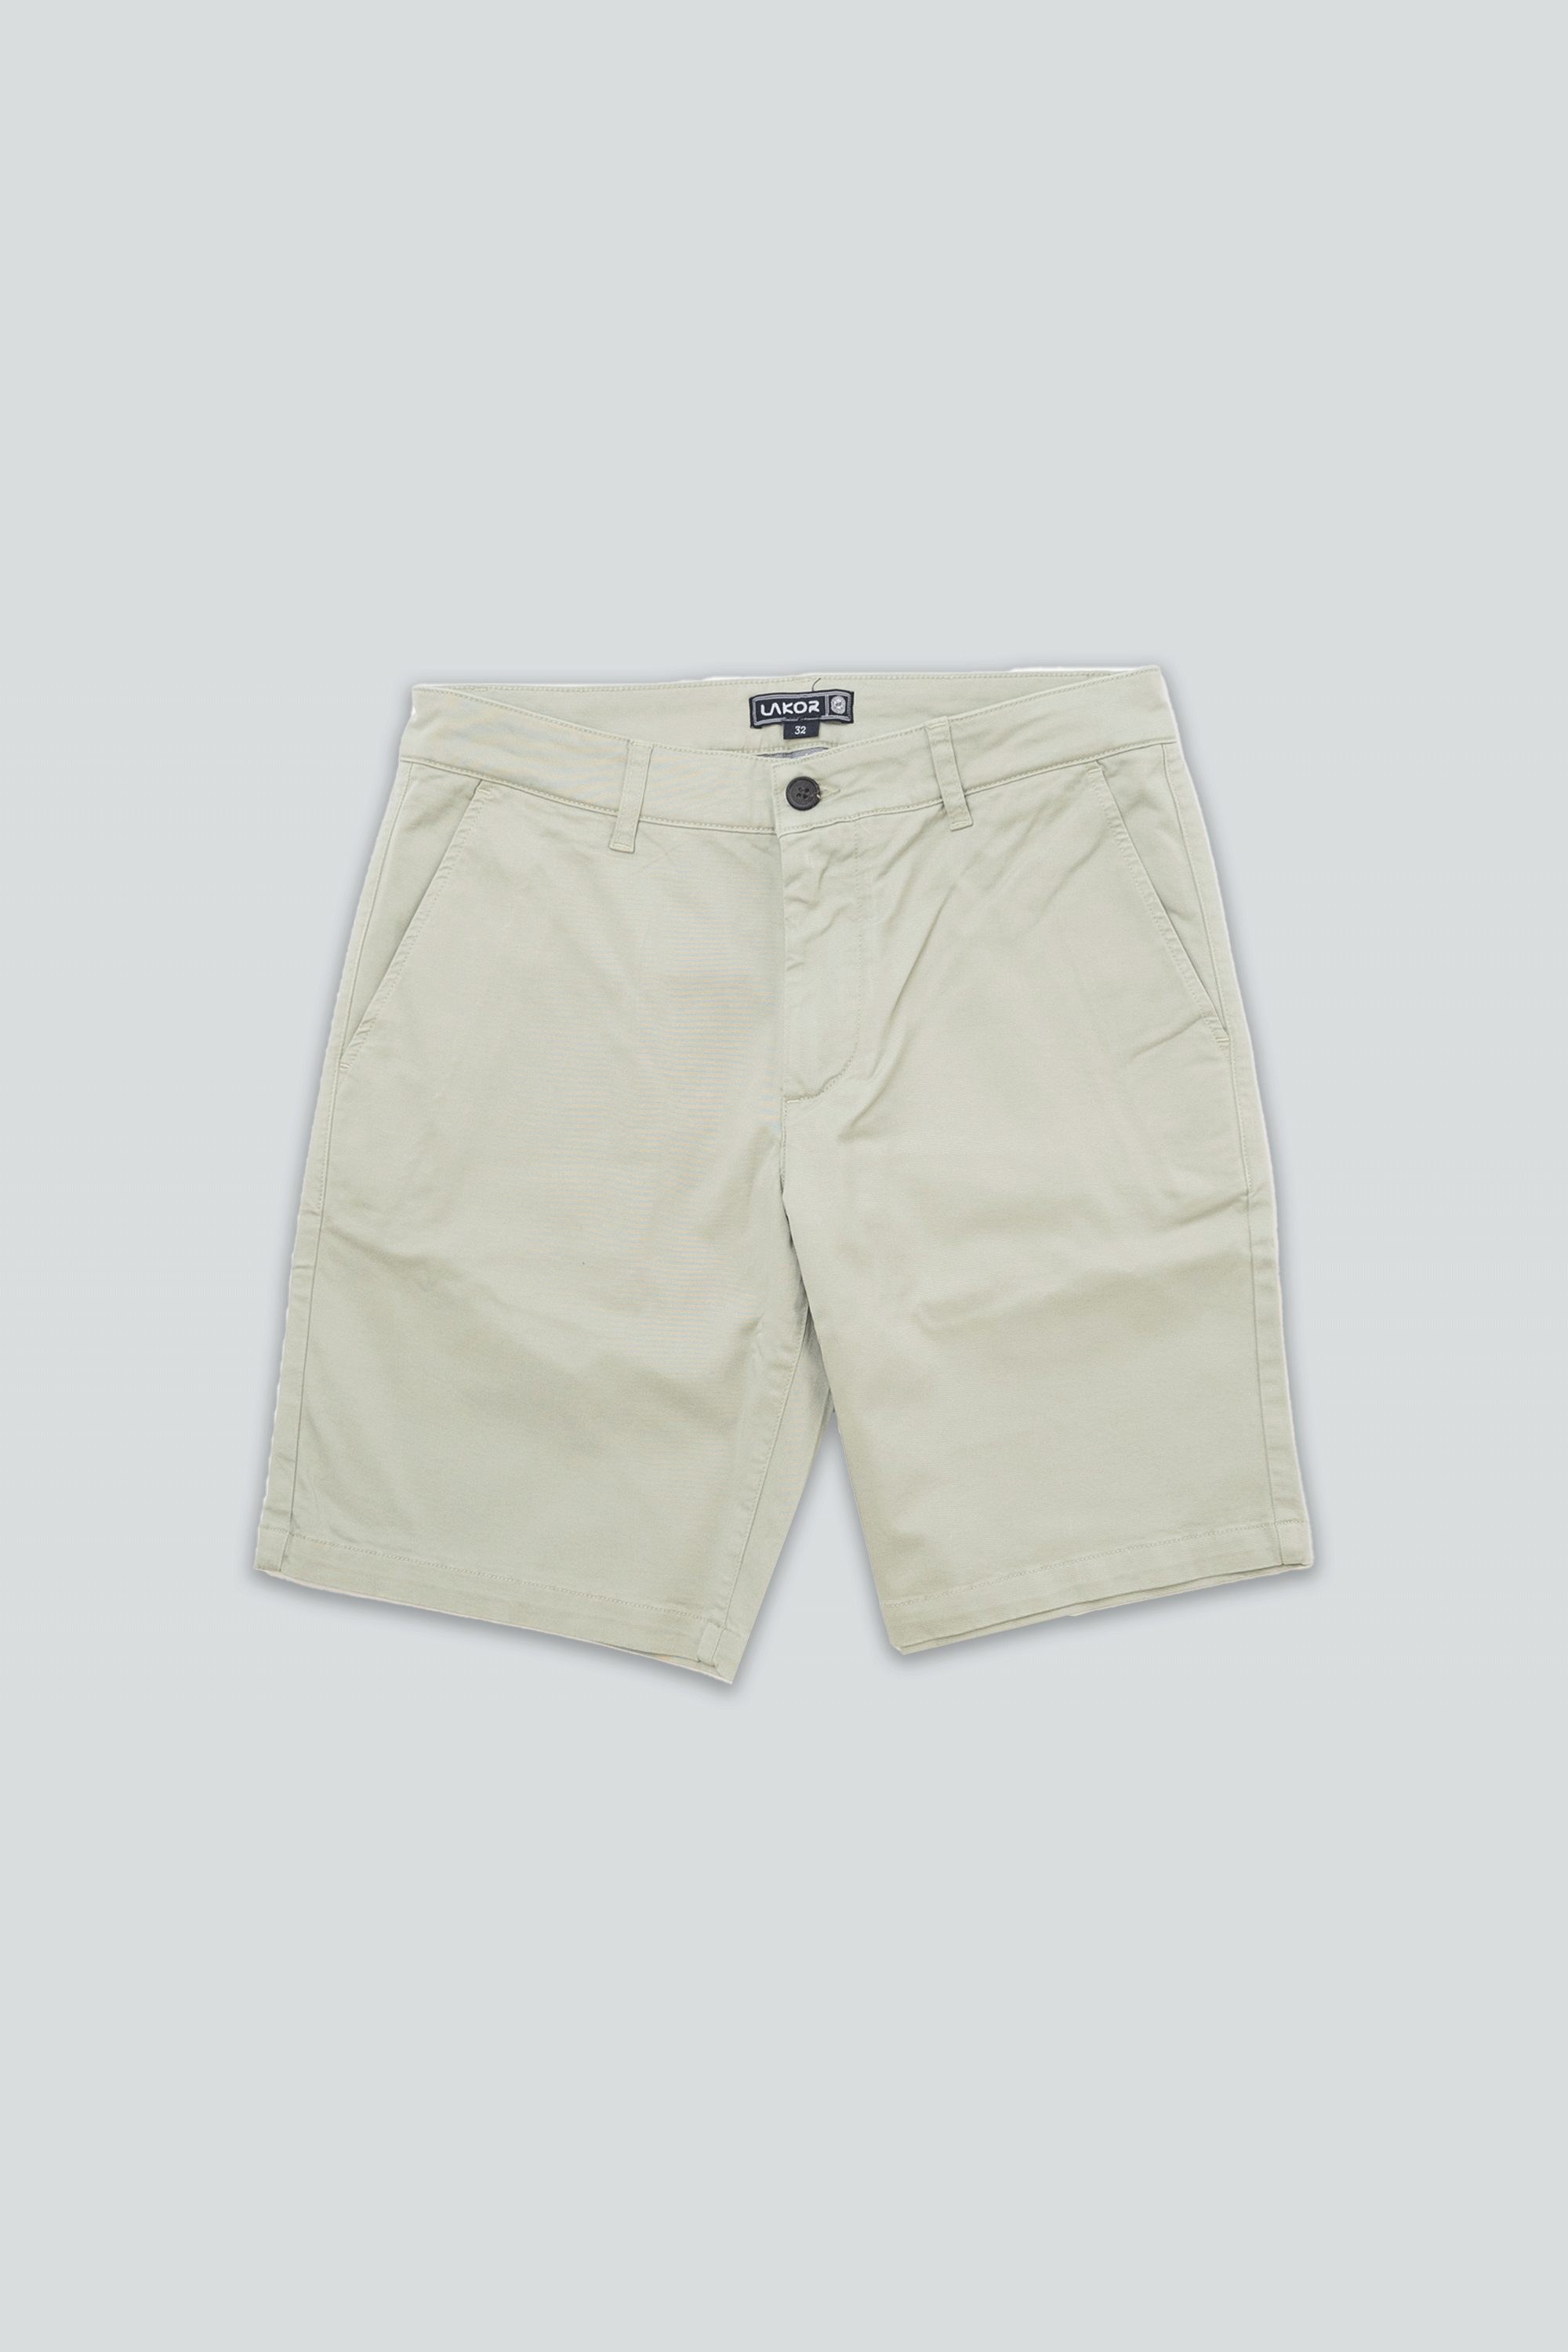 Chino Shorts (Desert Sage)